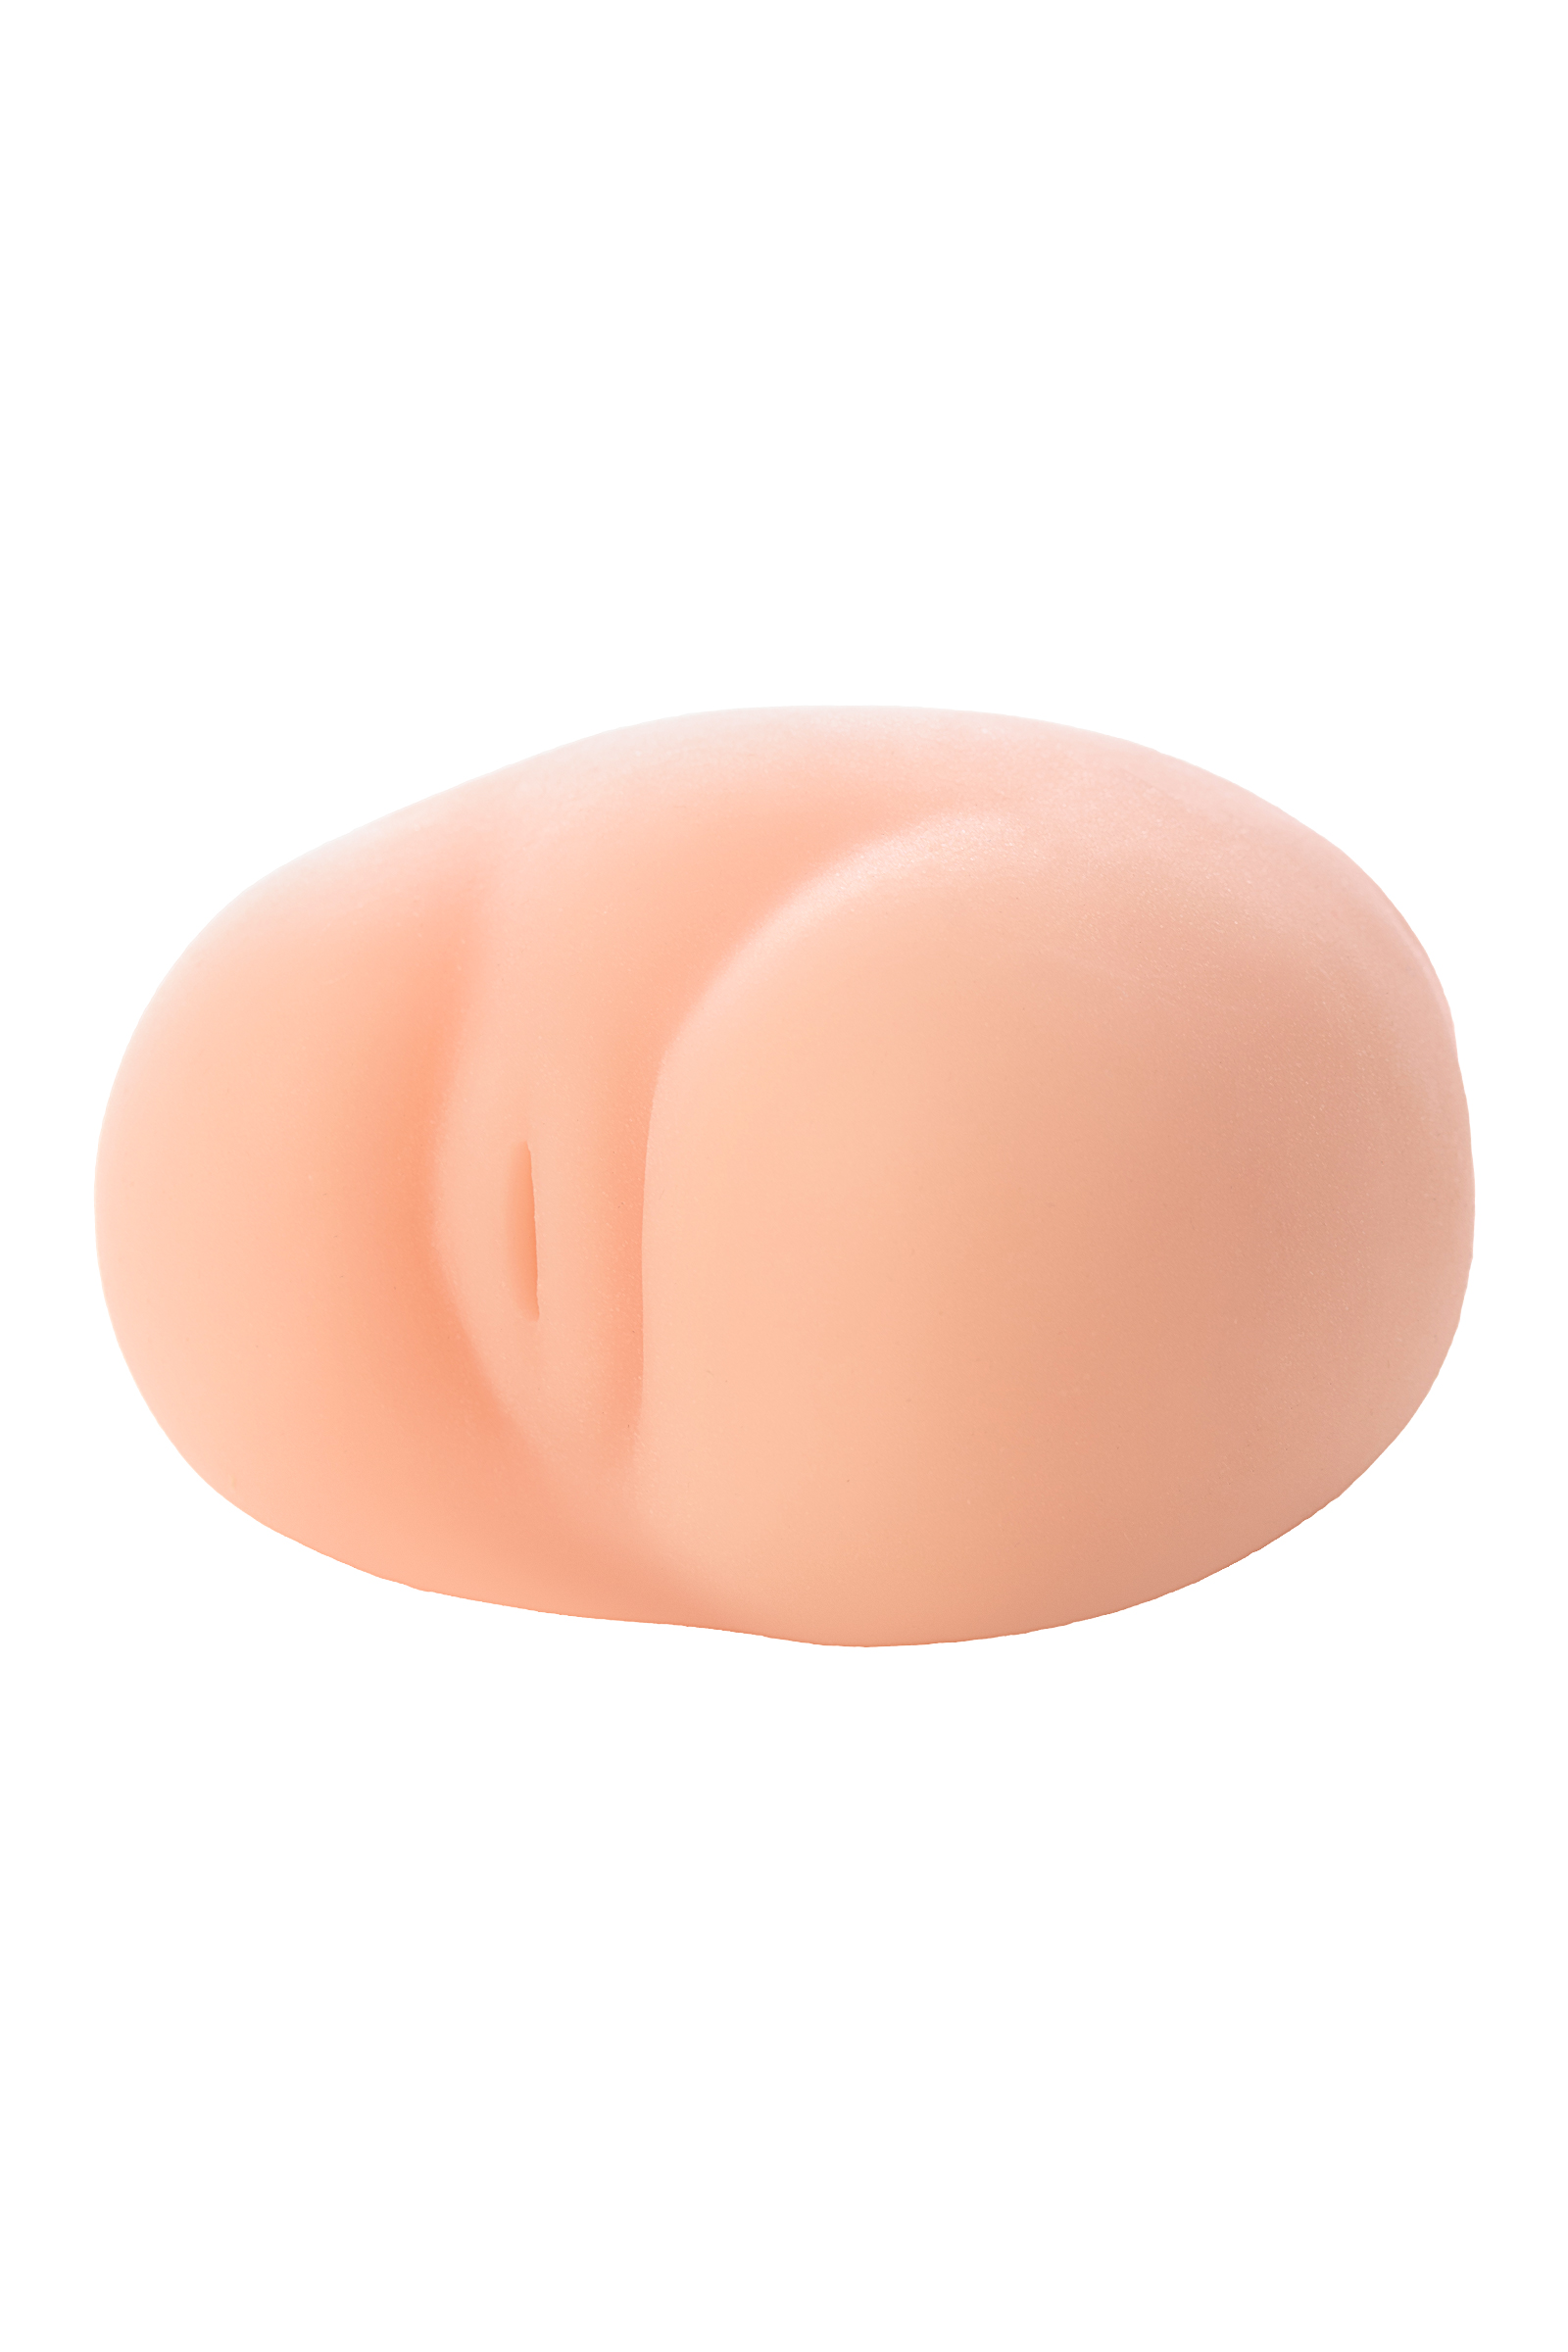 Мастурбатор реалистичный TOYFA WOW!, вагина, TPR, телесный, 9,5 см. Фото N4